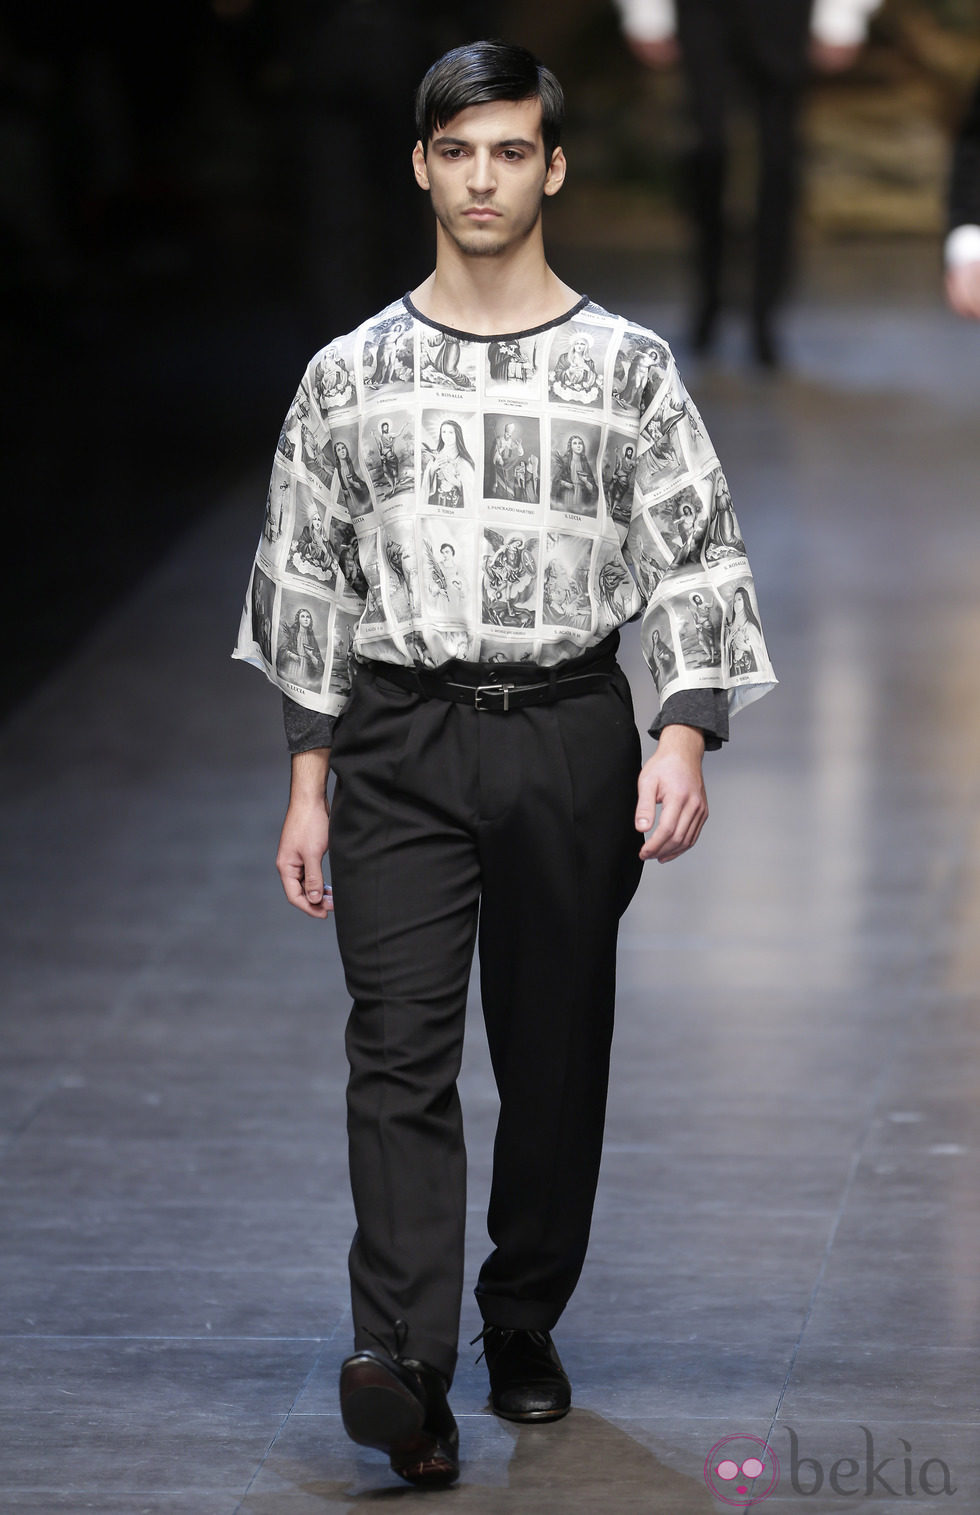 Camiseta religiosa de la colección otoño/invierno 2013/2014 de Dolce & Gabbana en la Semana de la Moda Masculina de Milán